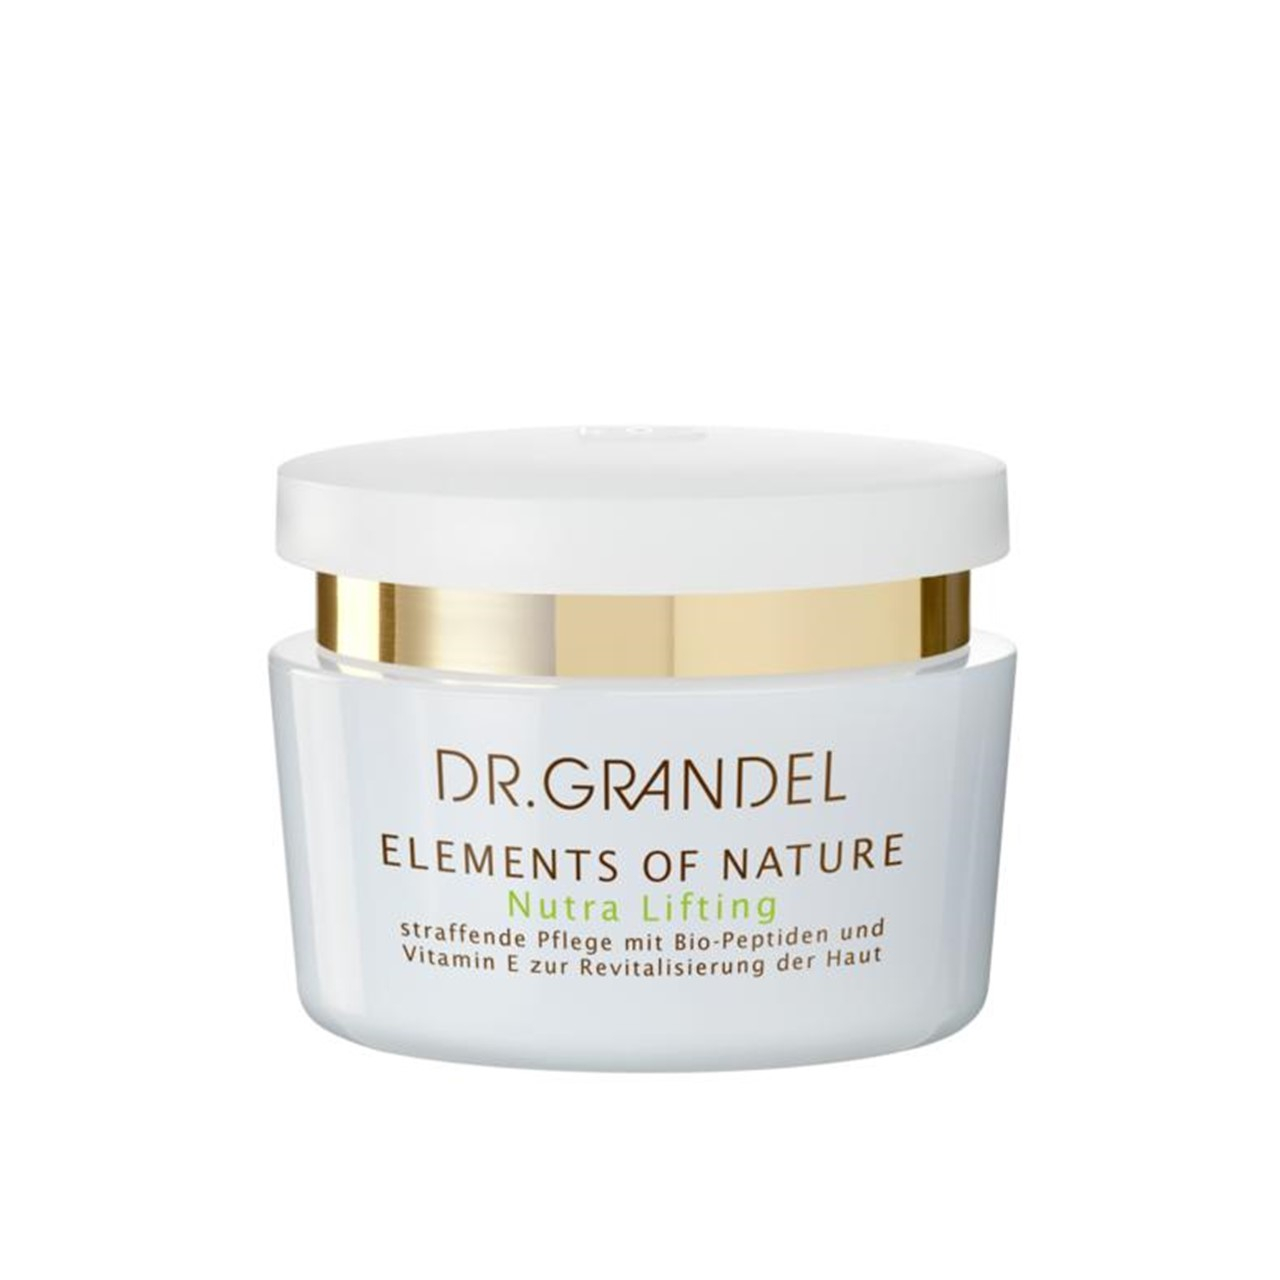 DR. GRANDEL Elements Of Nature Nutra Lifting Cream 50ml (1.69fl oz)